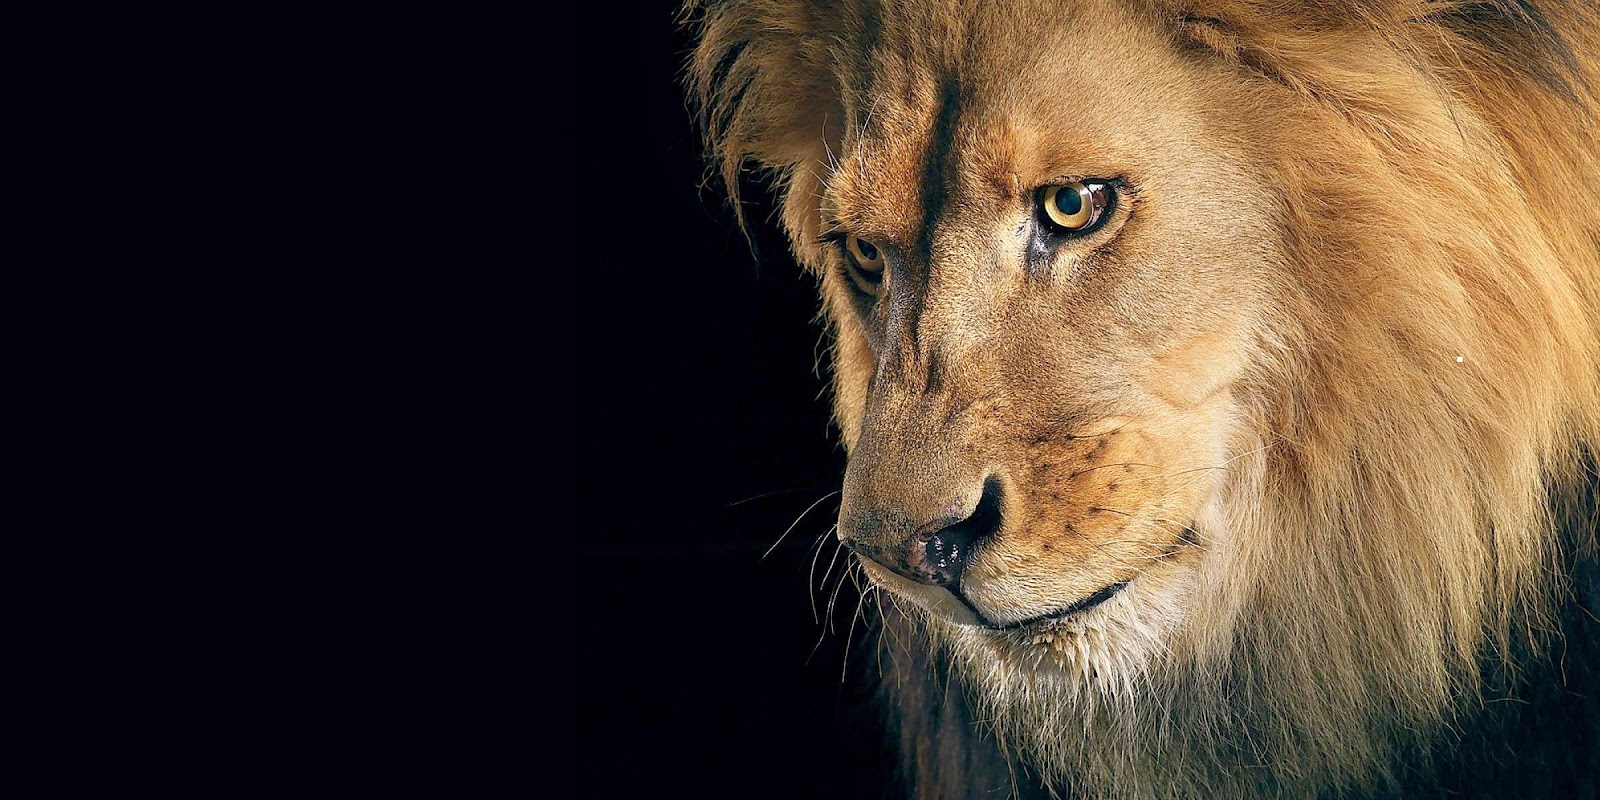 レオンのhd壁紙,ライオン,野生動物,ヘア,マサイライオン,ネコ科